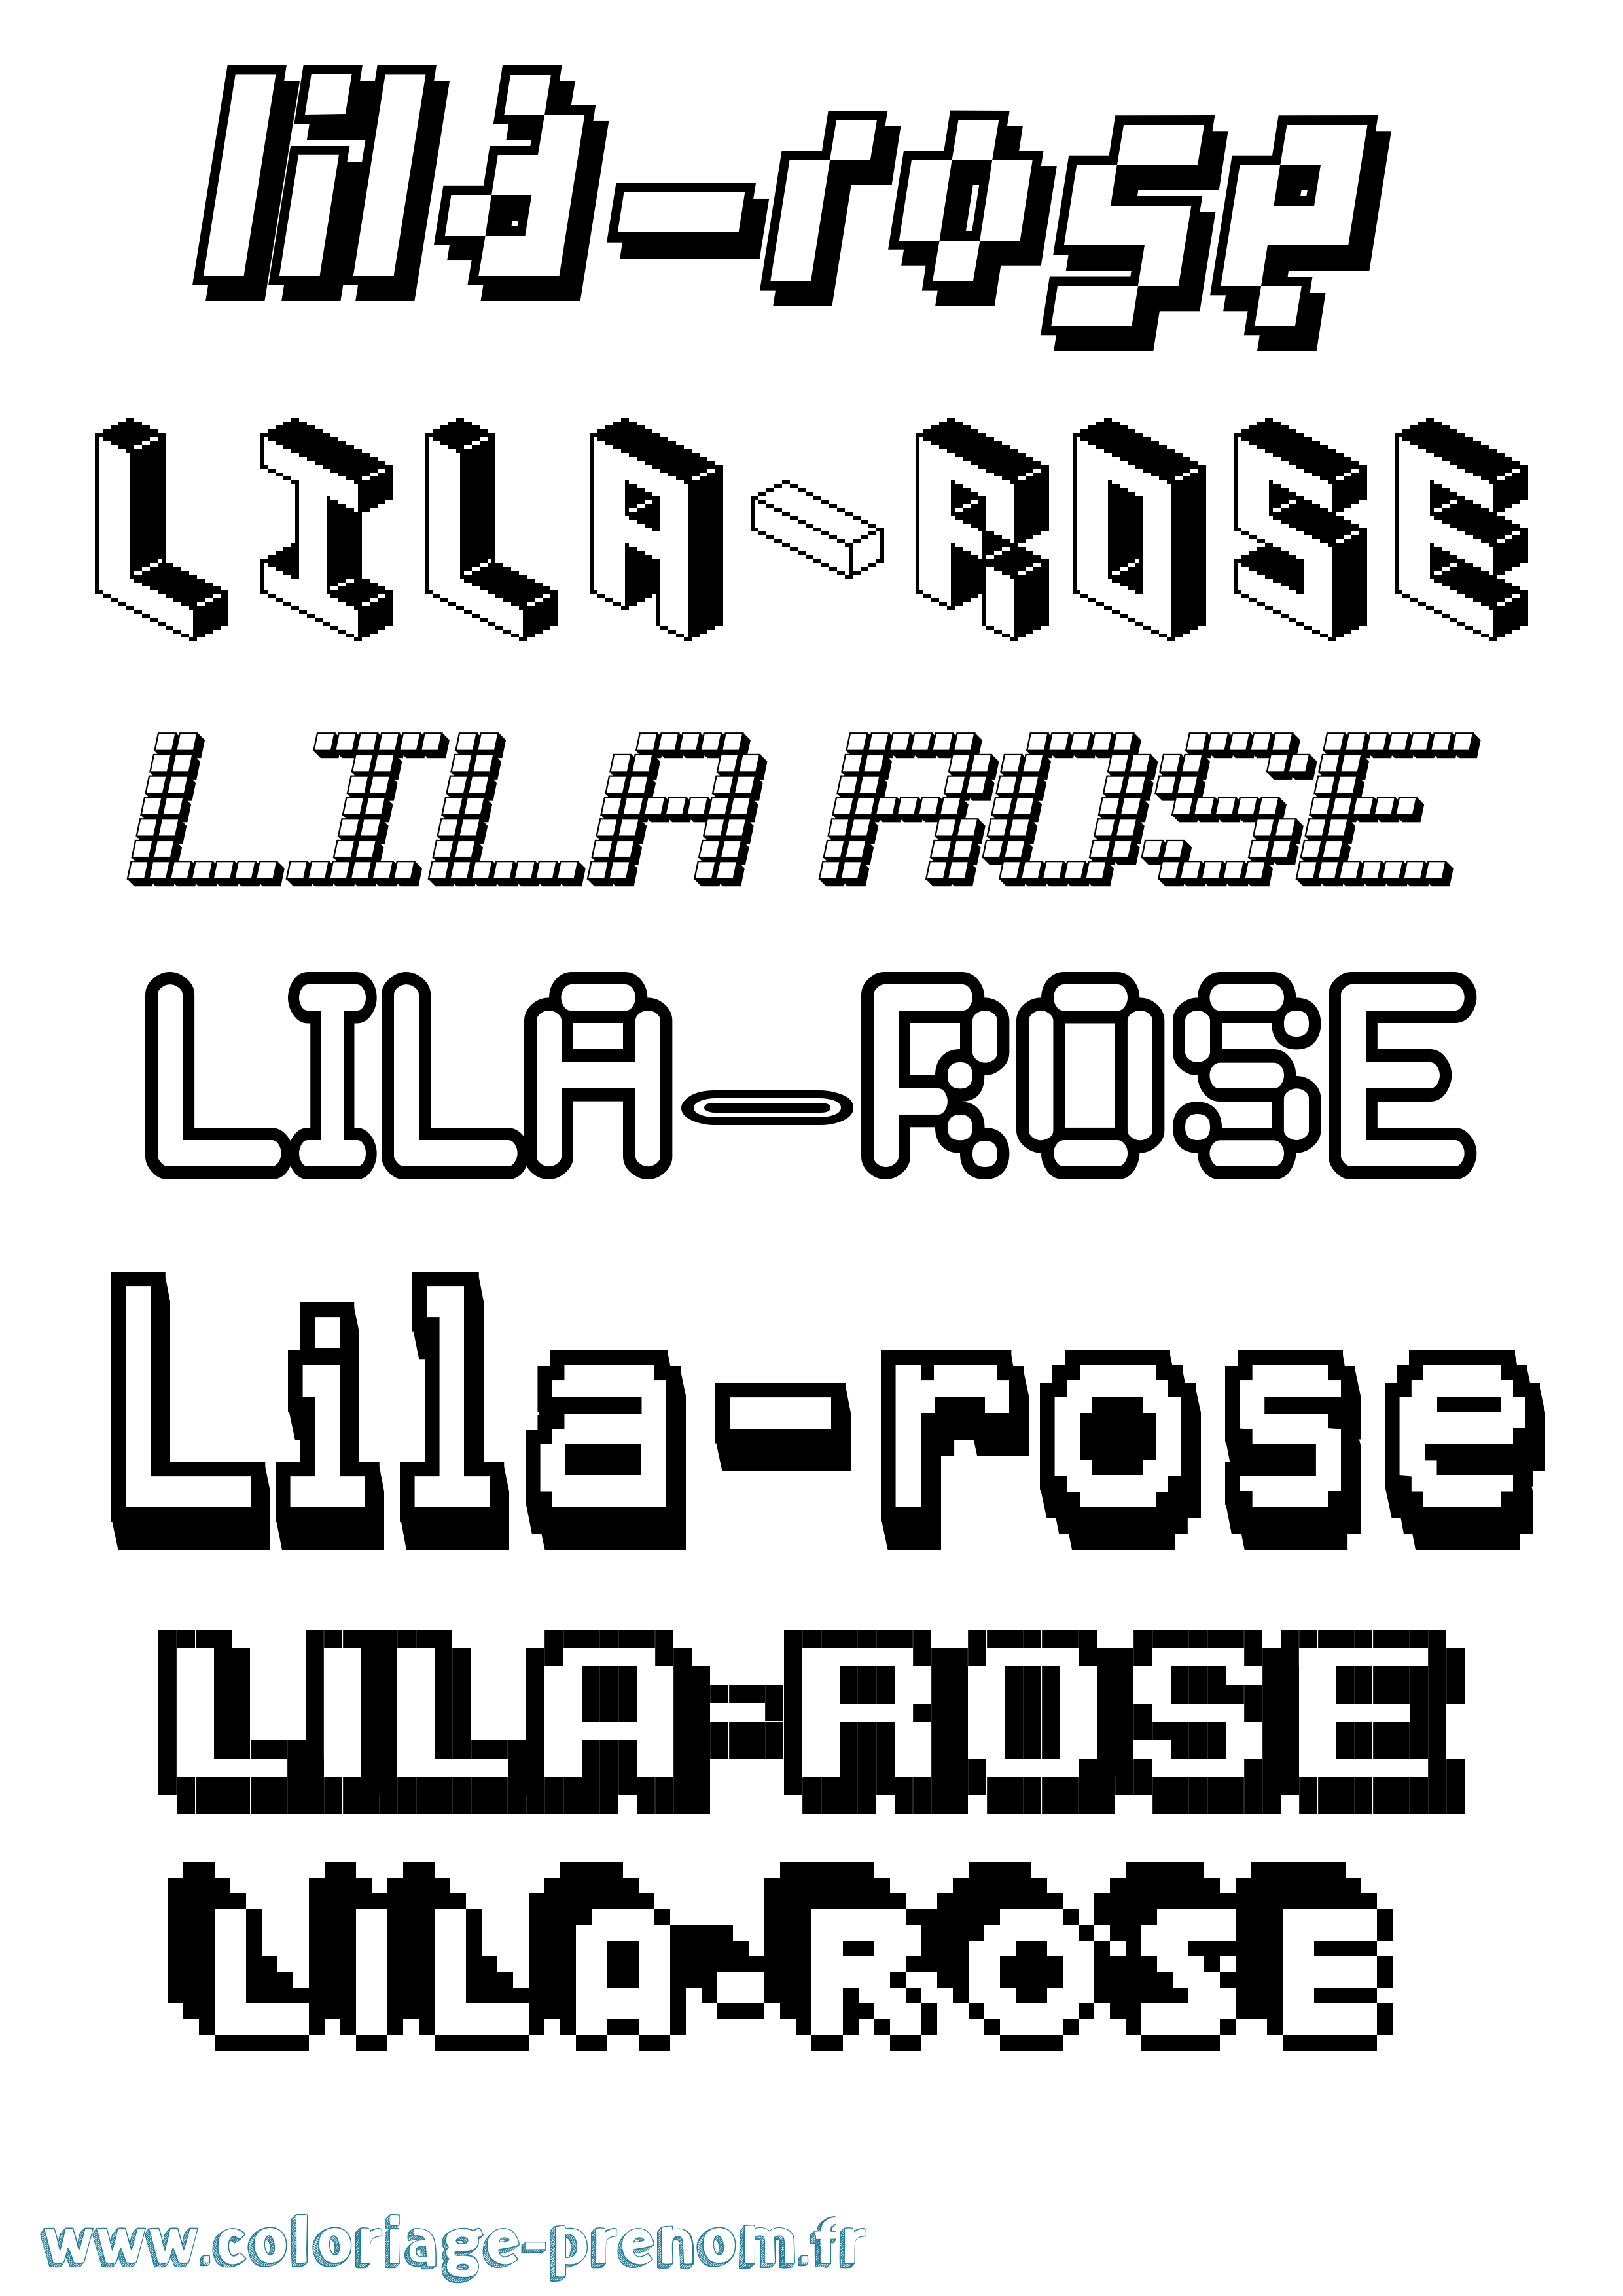 Coloriage prénom Lila-Rose Pixel